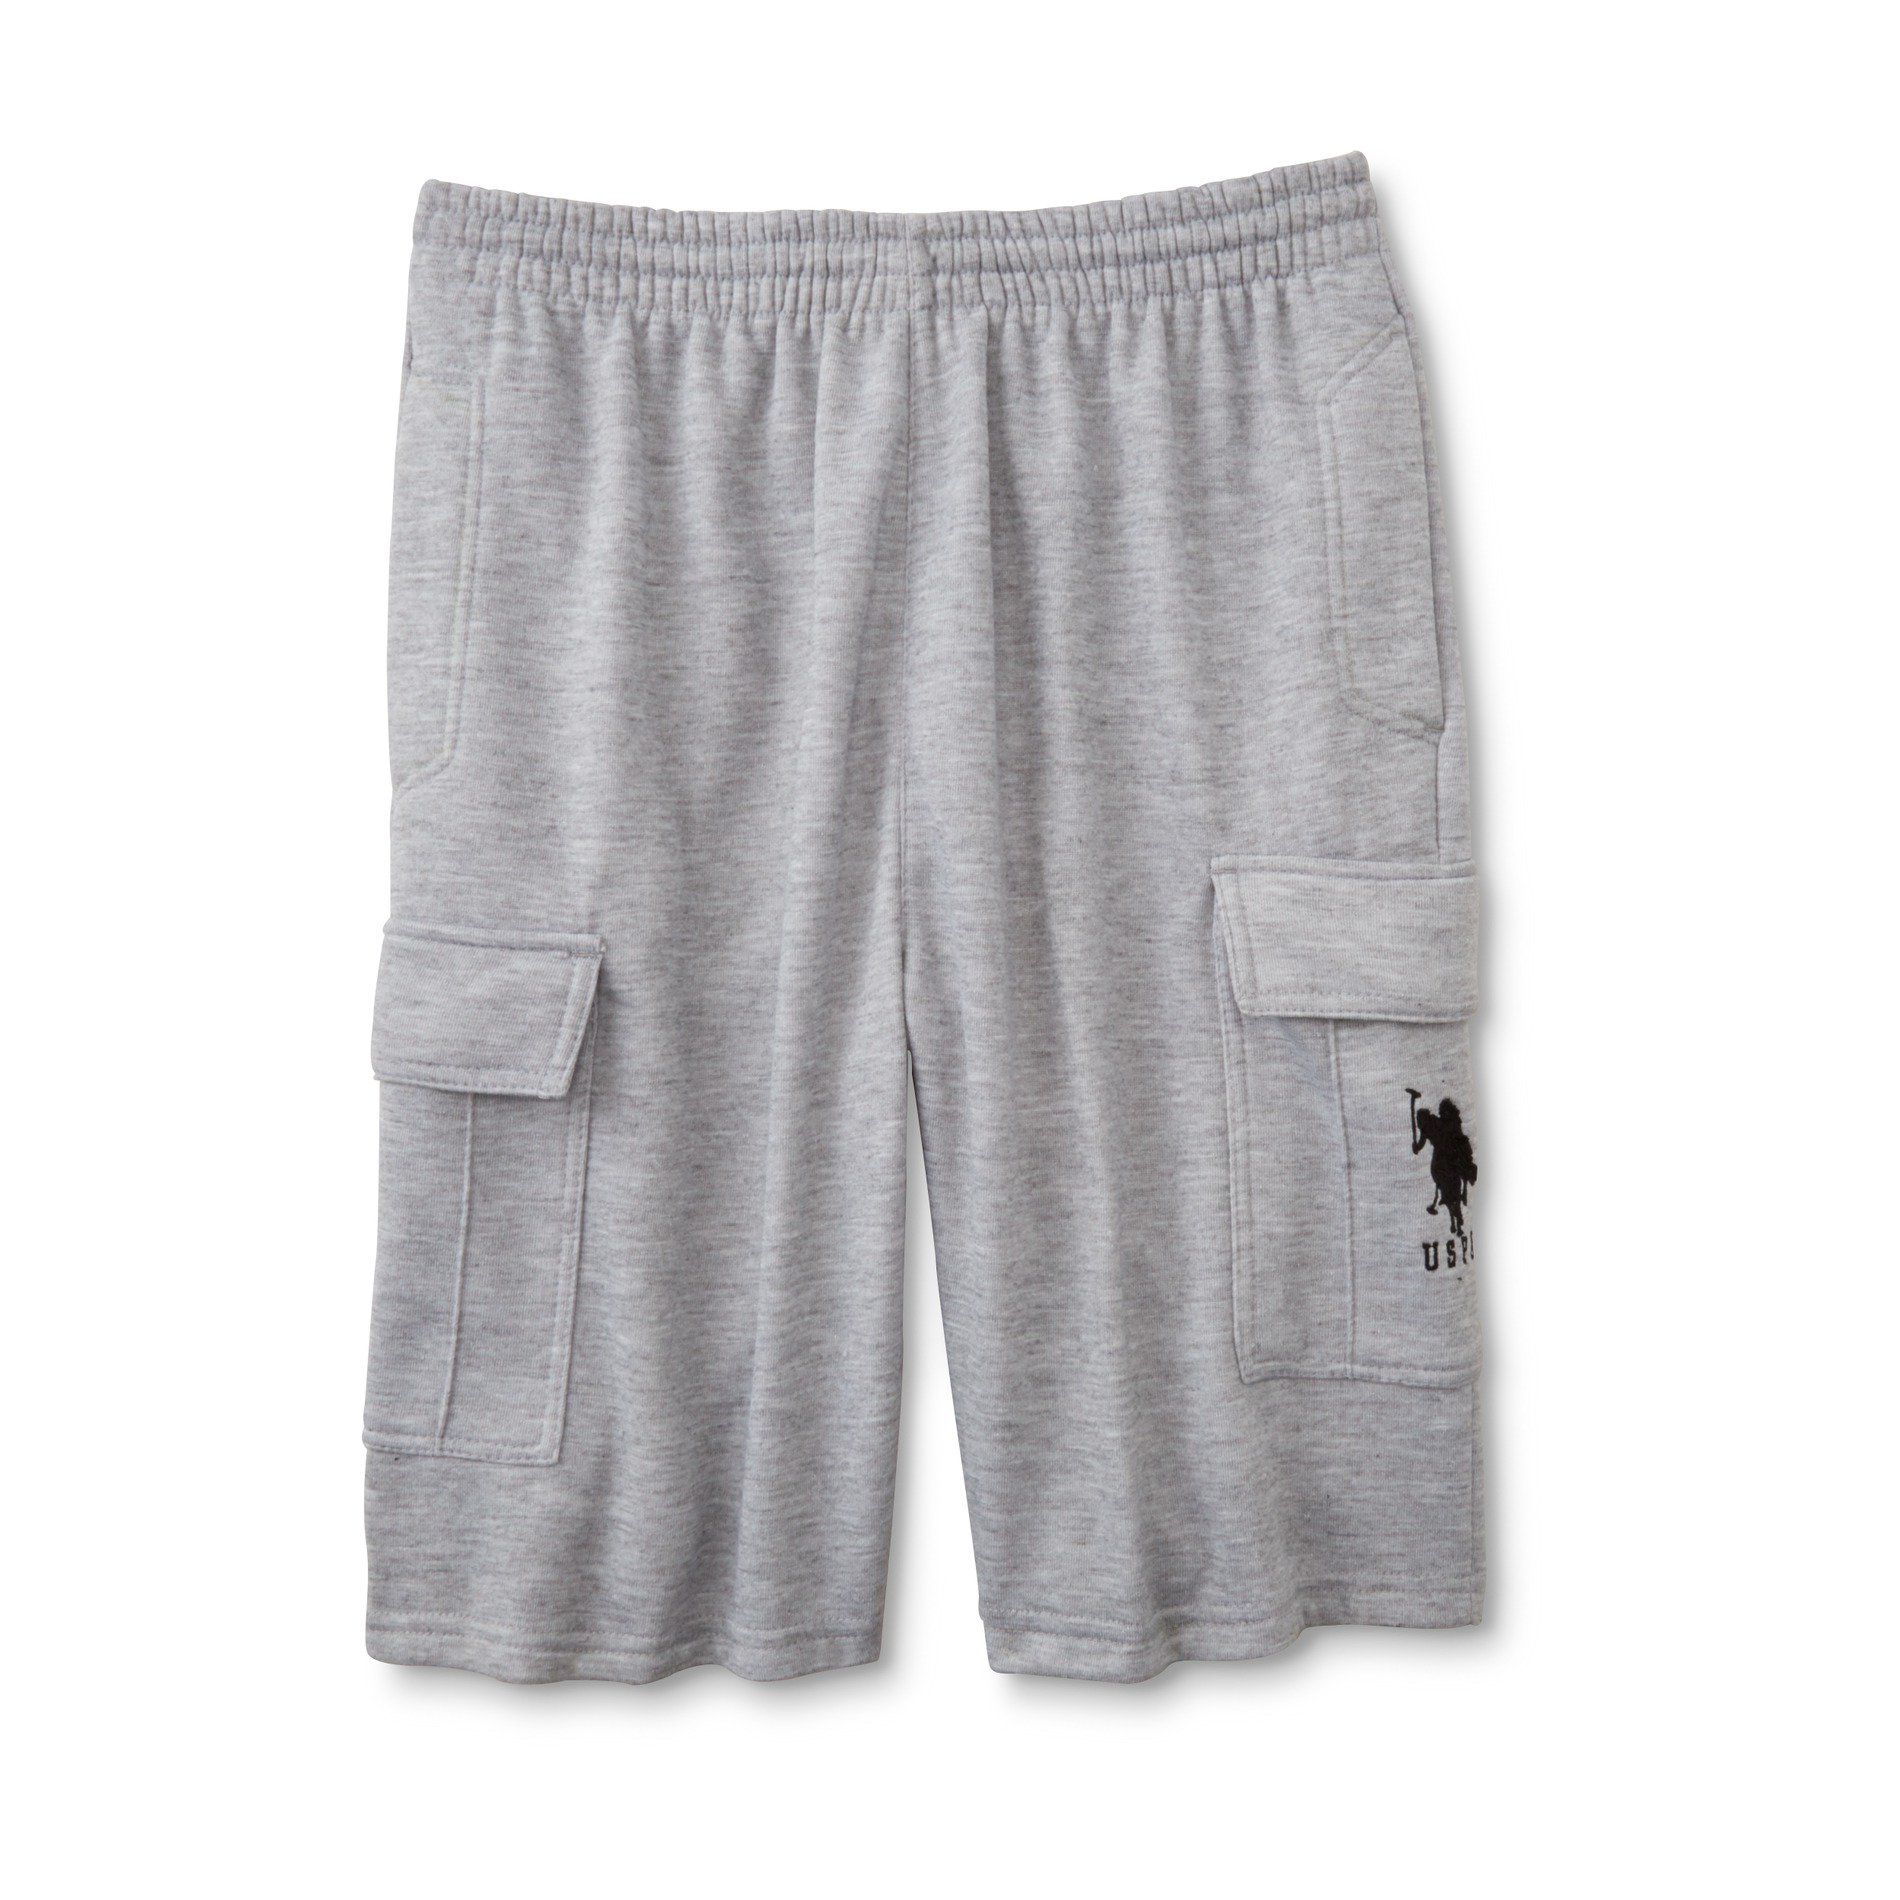 U.S. Polo Assn. Men's Knit Cargo Shorts